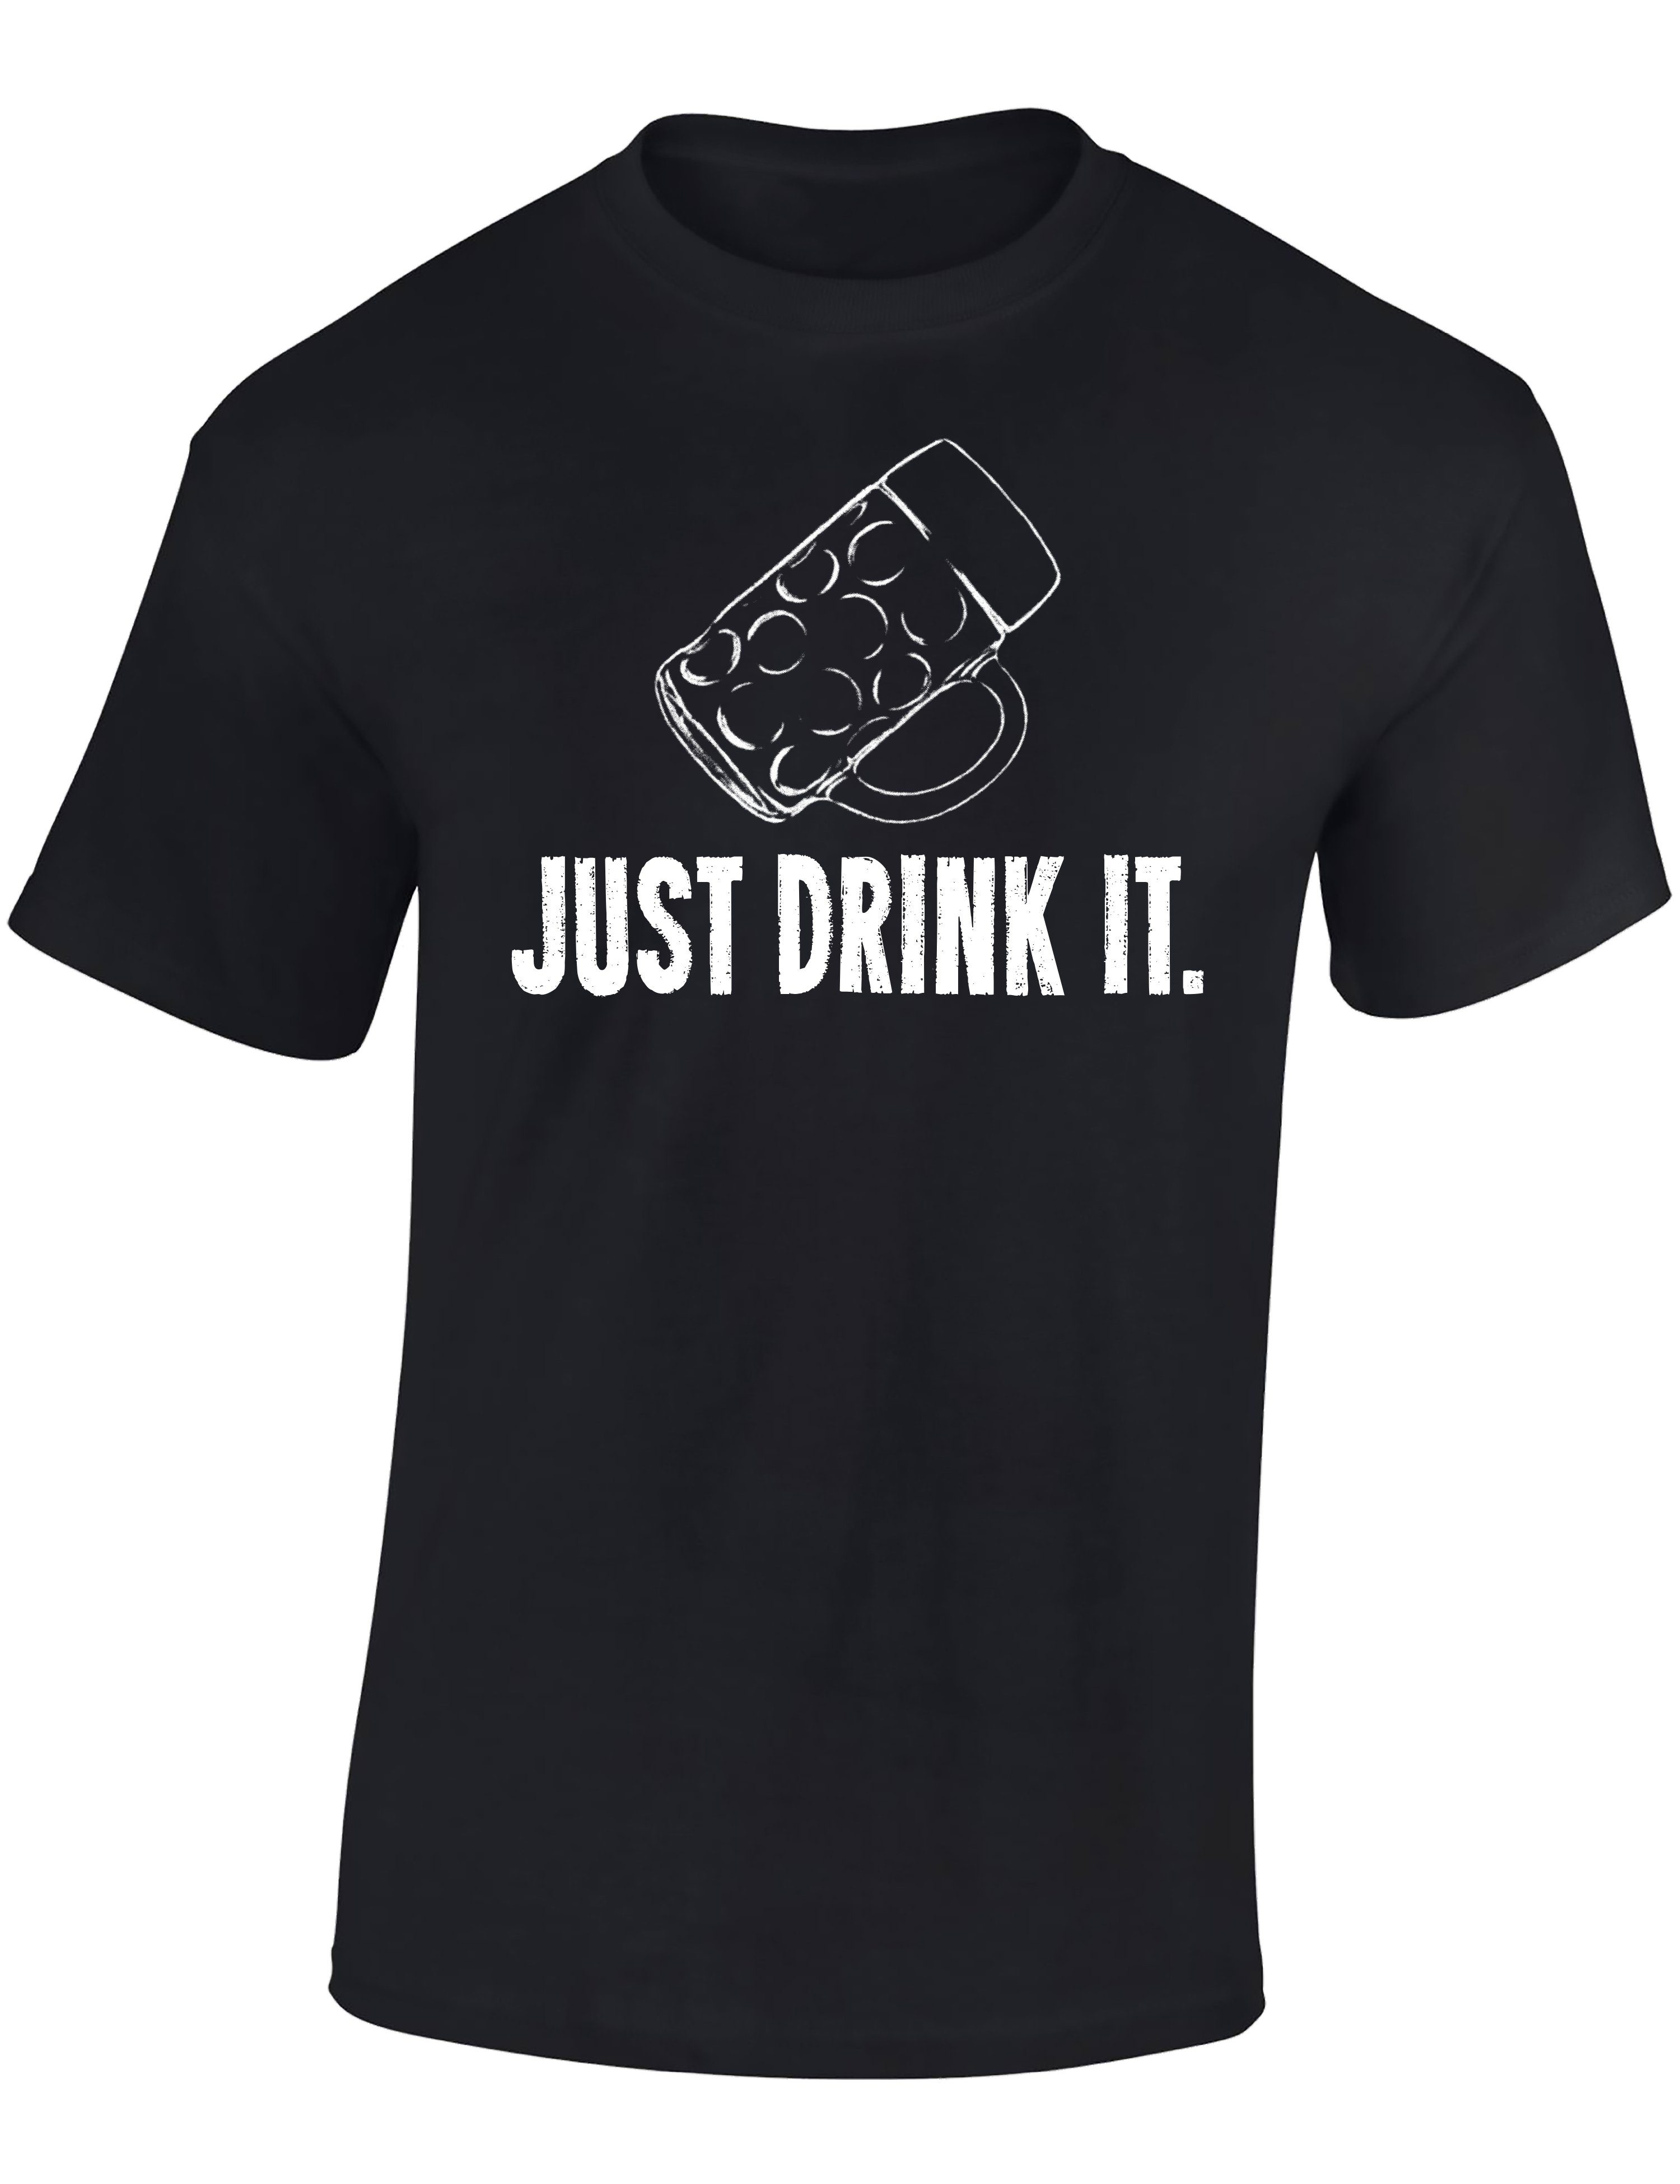 Baddery Print-Shirt Bier Geschenke für Männer : Just drink it - Bier T-Shirt, hochwertiger Siebdruck, aus Baumwolle